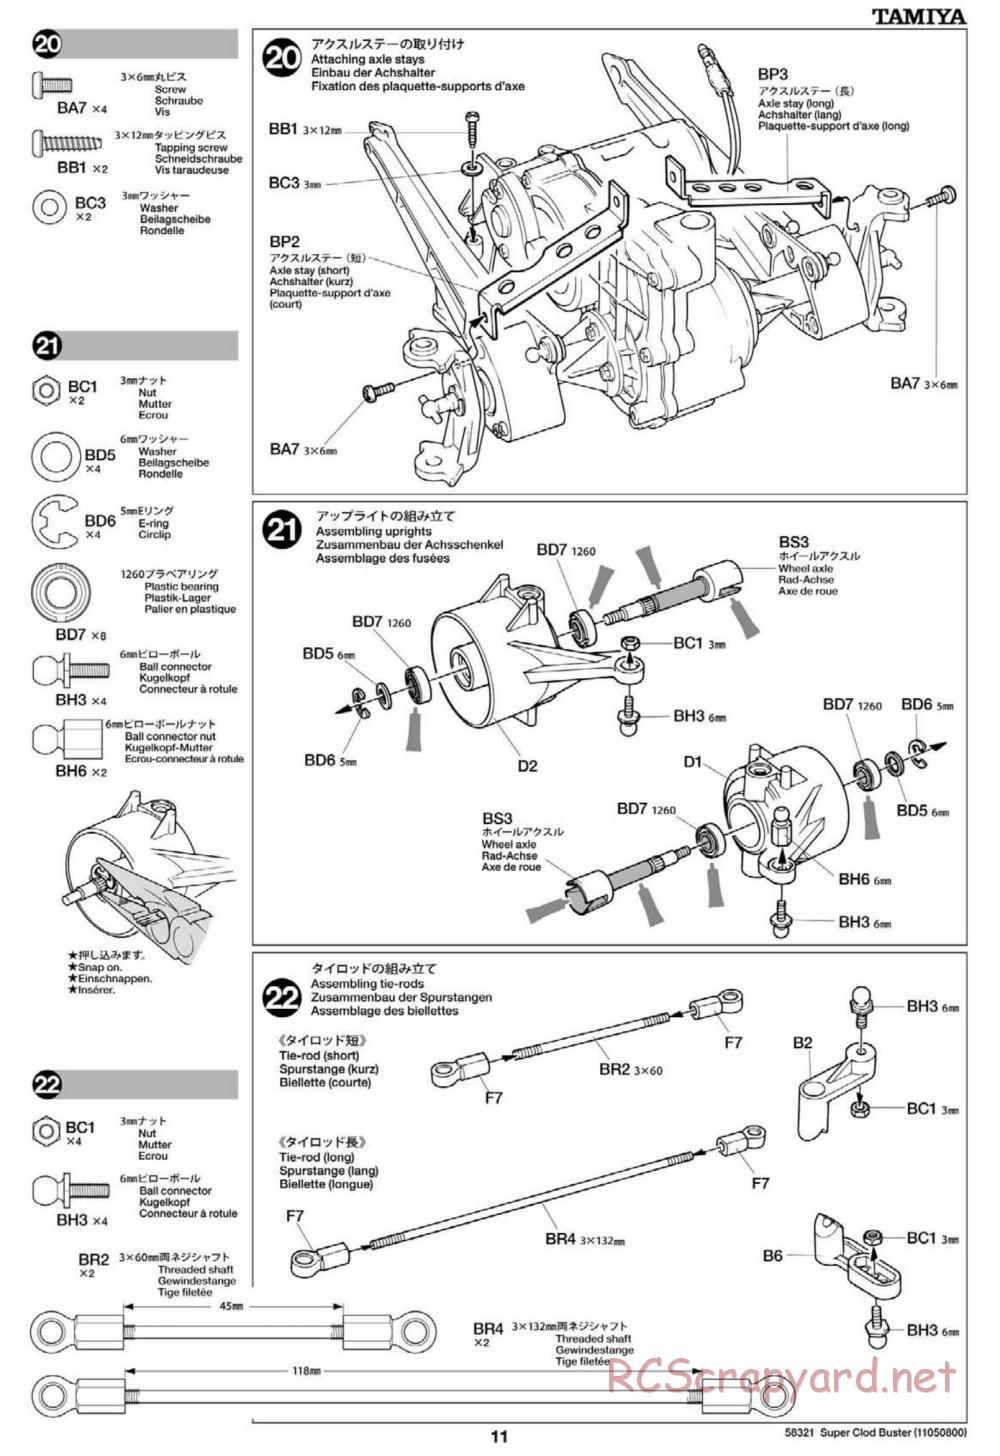 Tamiya - Super Clod Buster Chassis - Manual - Page 11